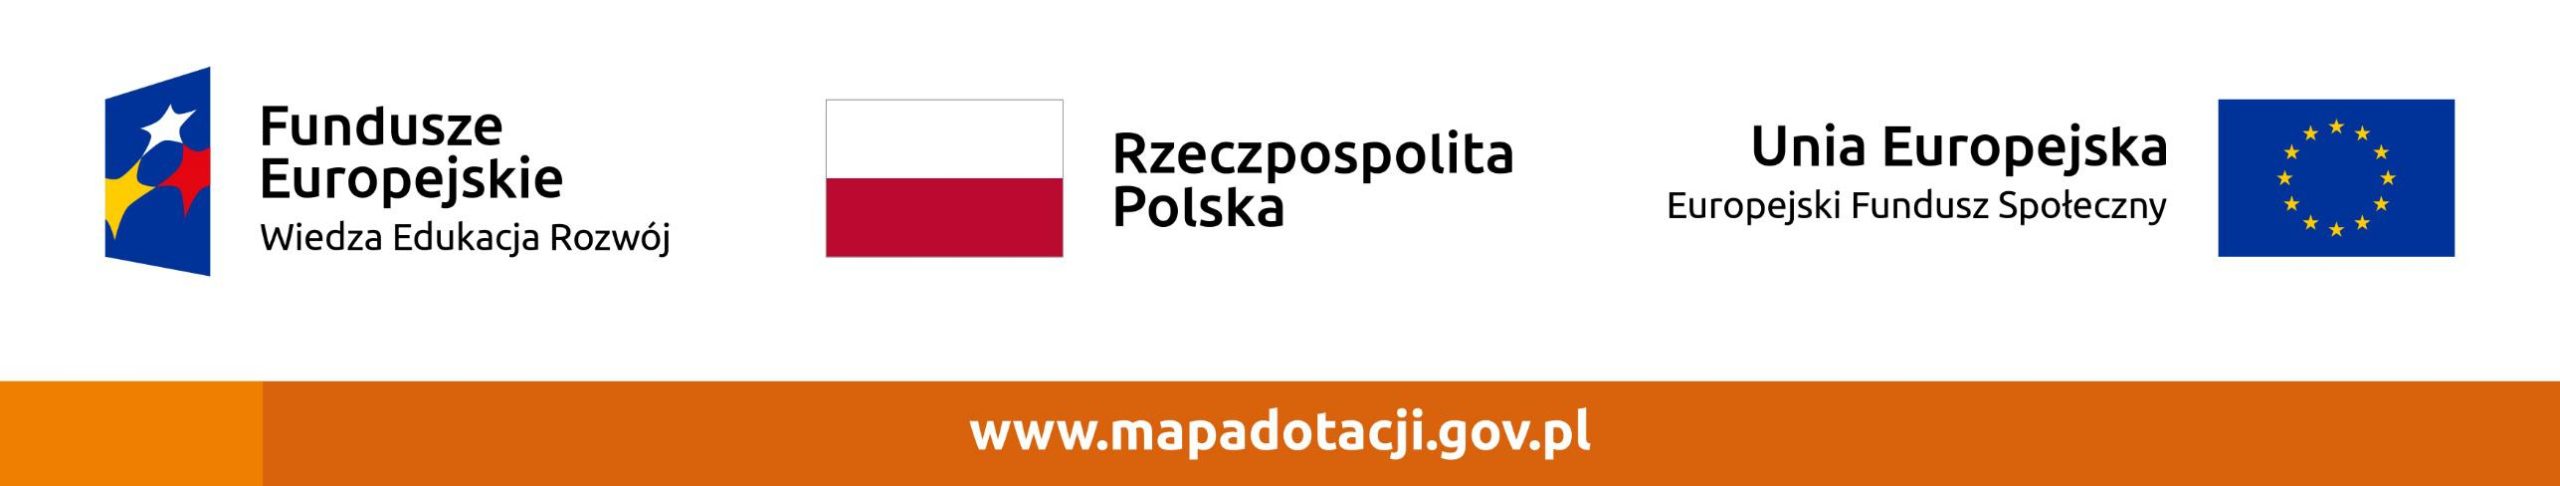 www.mapadotacji.gov.pl